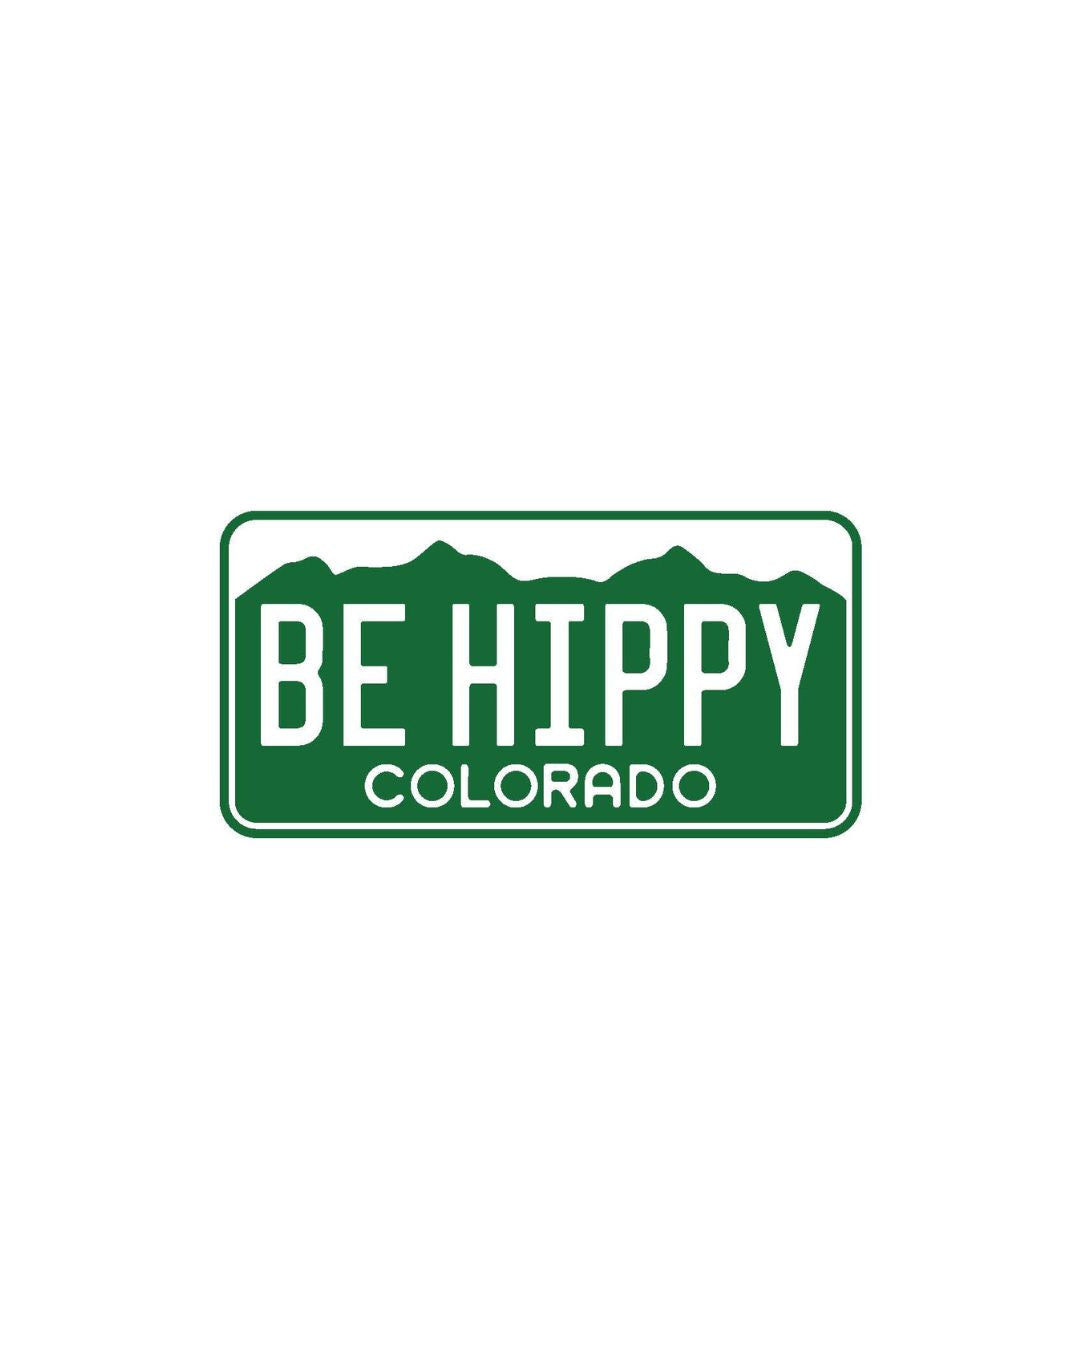 Mini Colorado License Plate Sticker